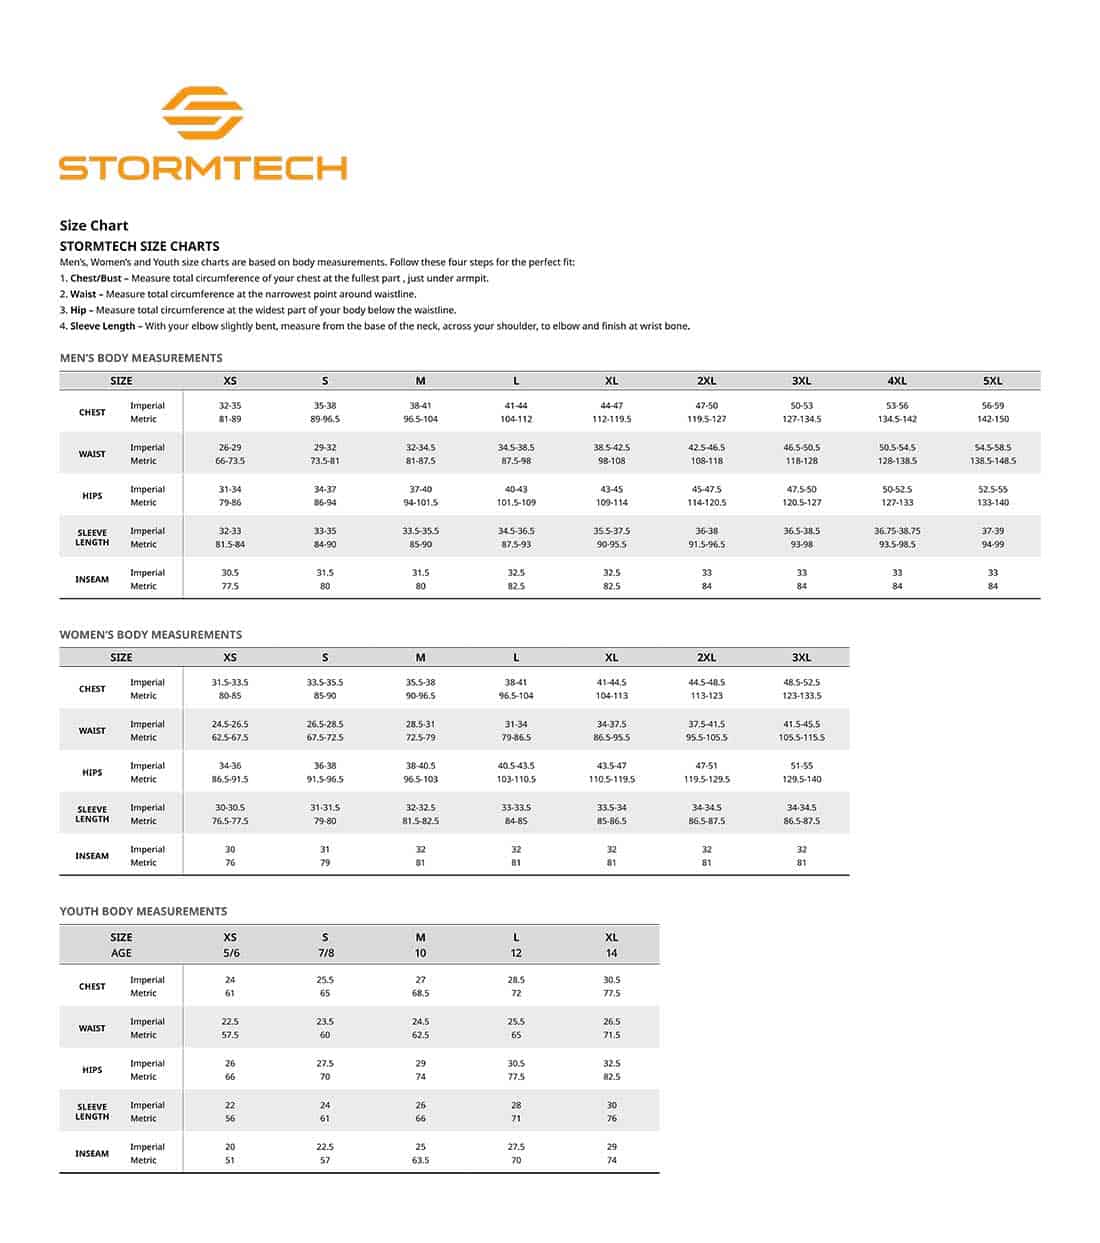 stormtech size chart image